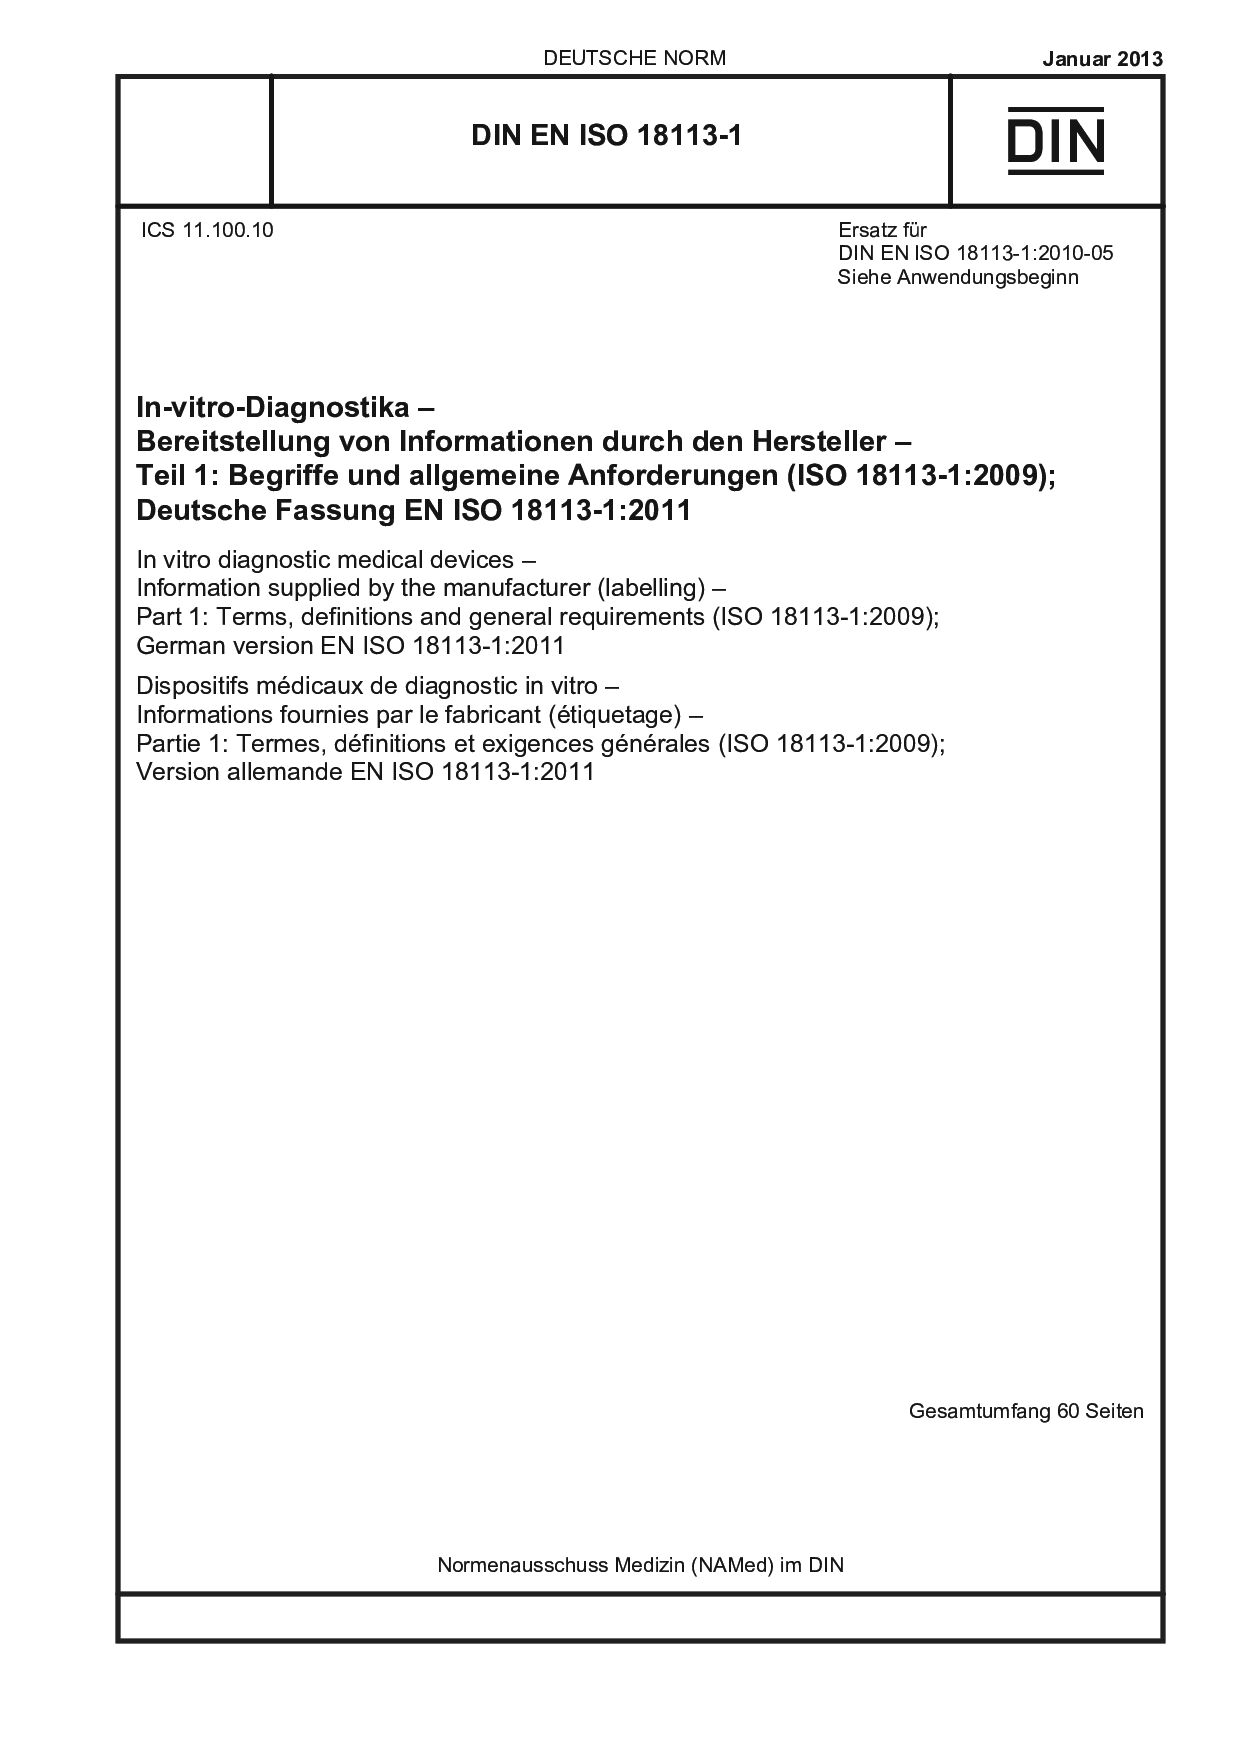 DIN EN ISO 18113-1:2013